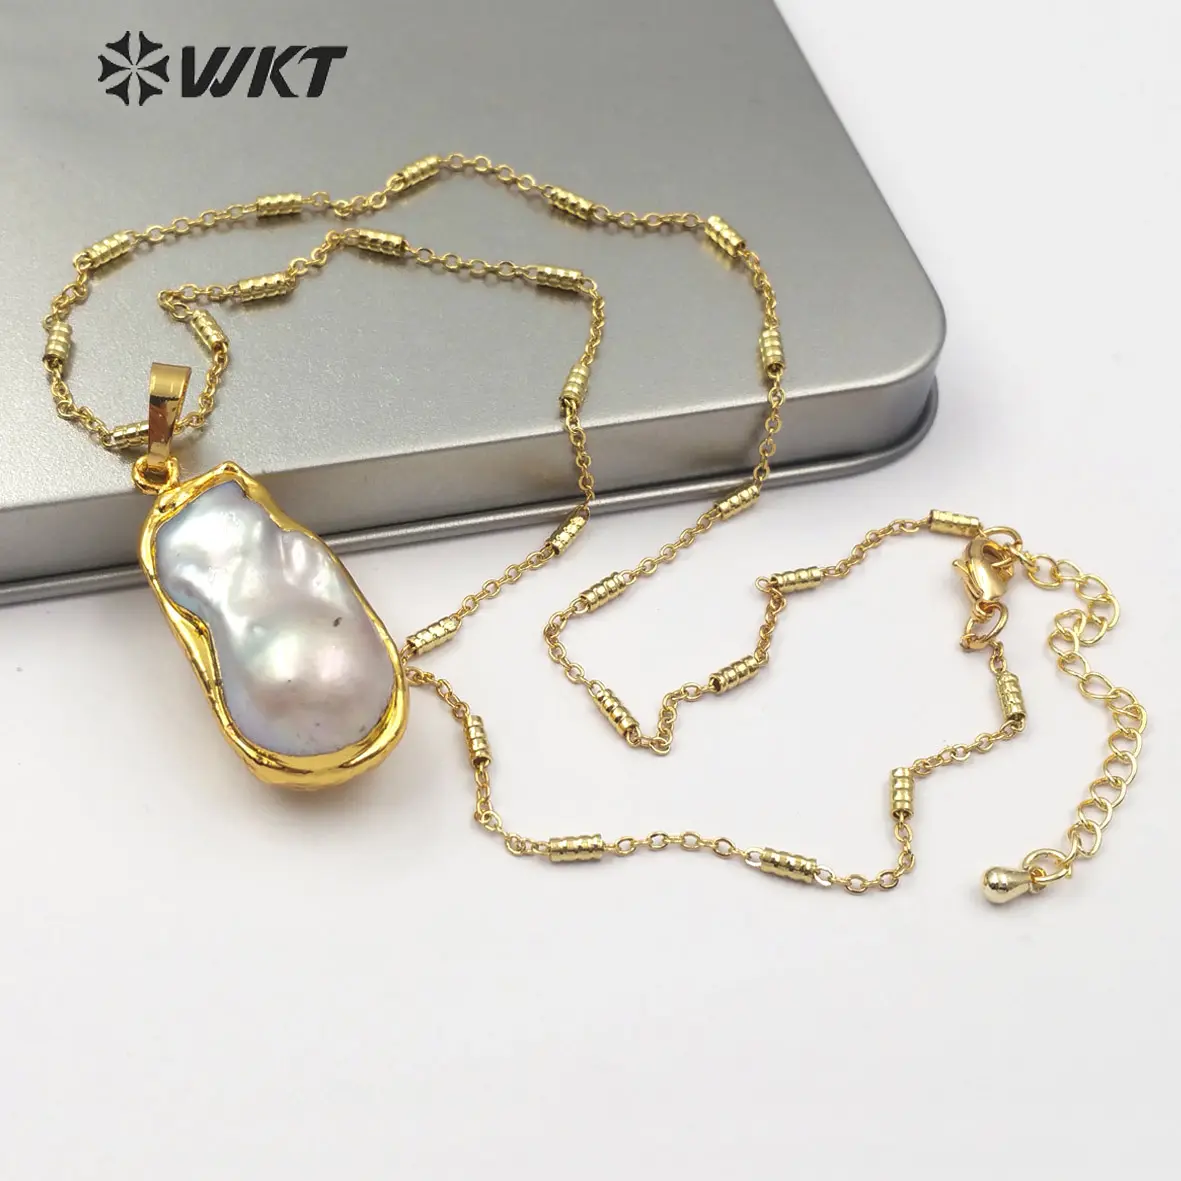 WT-JN063 perhiasan bentuk tidak beraturan liontin mutiara alami spesifik setiap setengah kalung mutiara dibalut berlapis emas